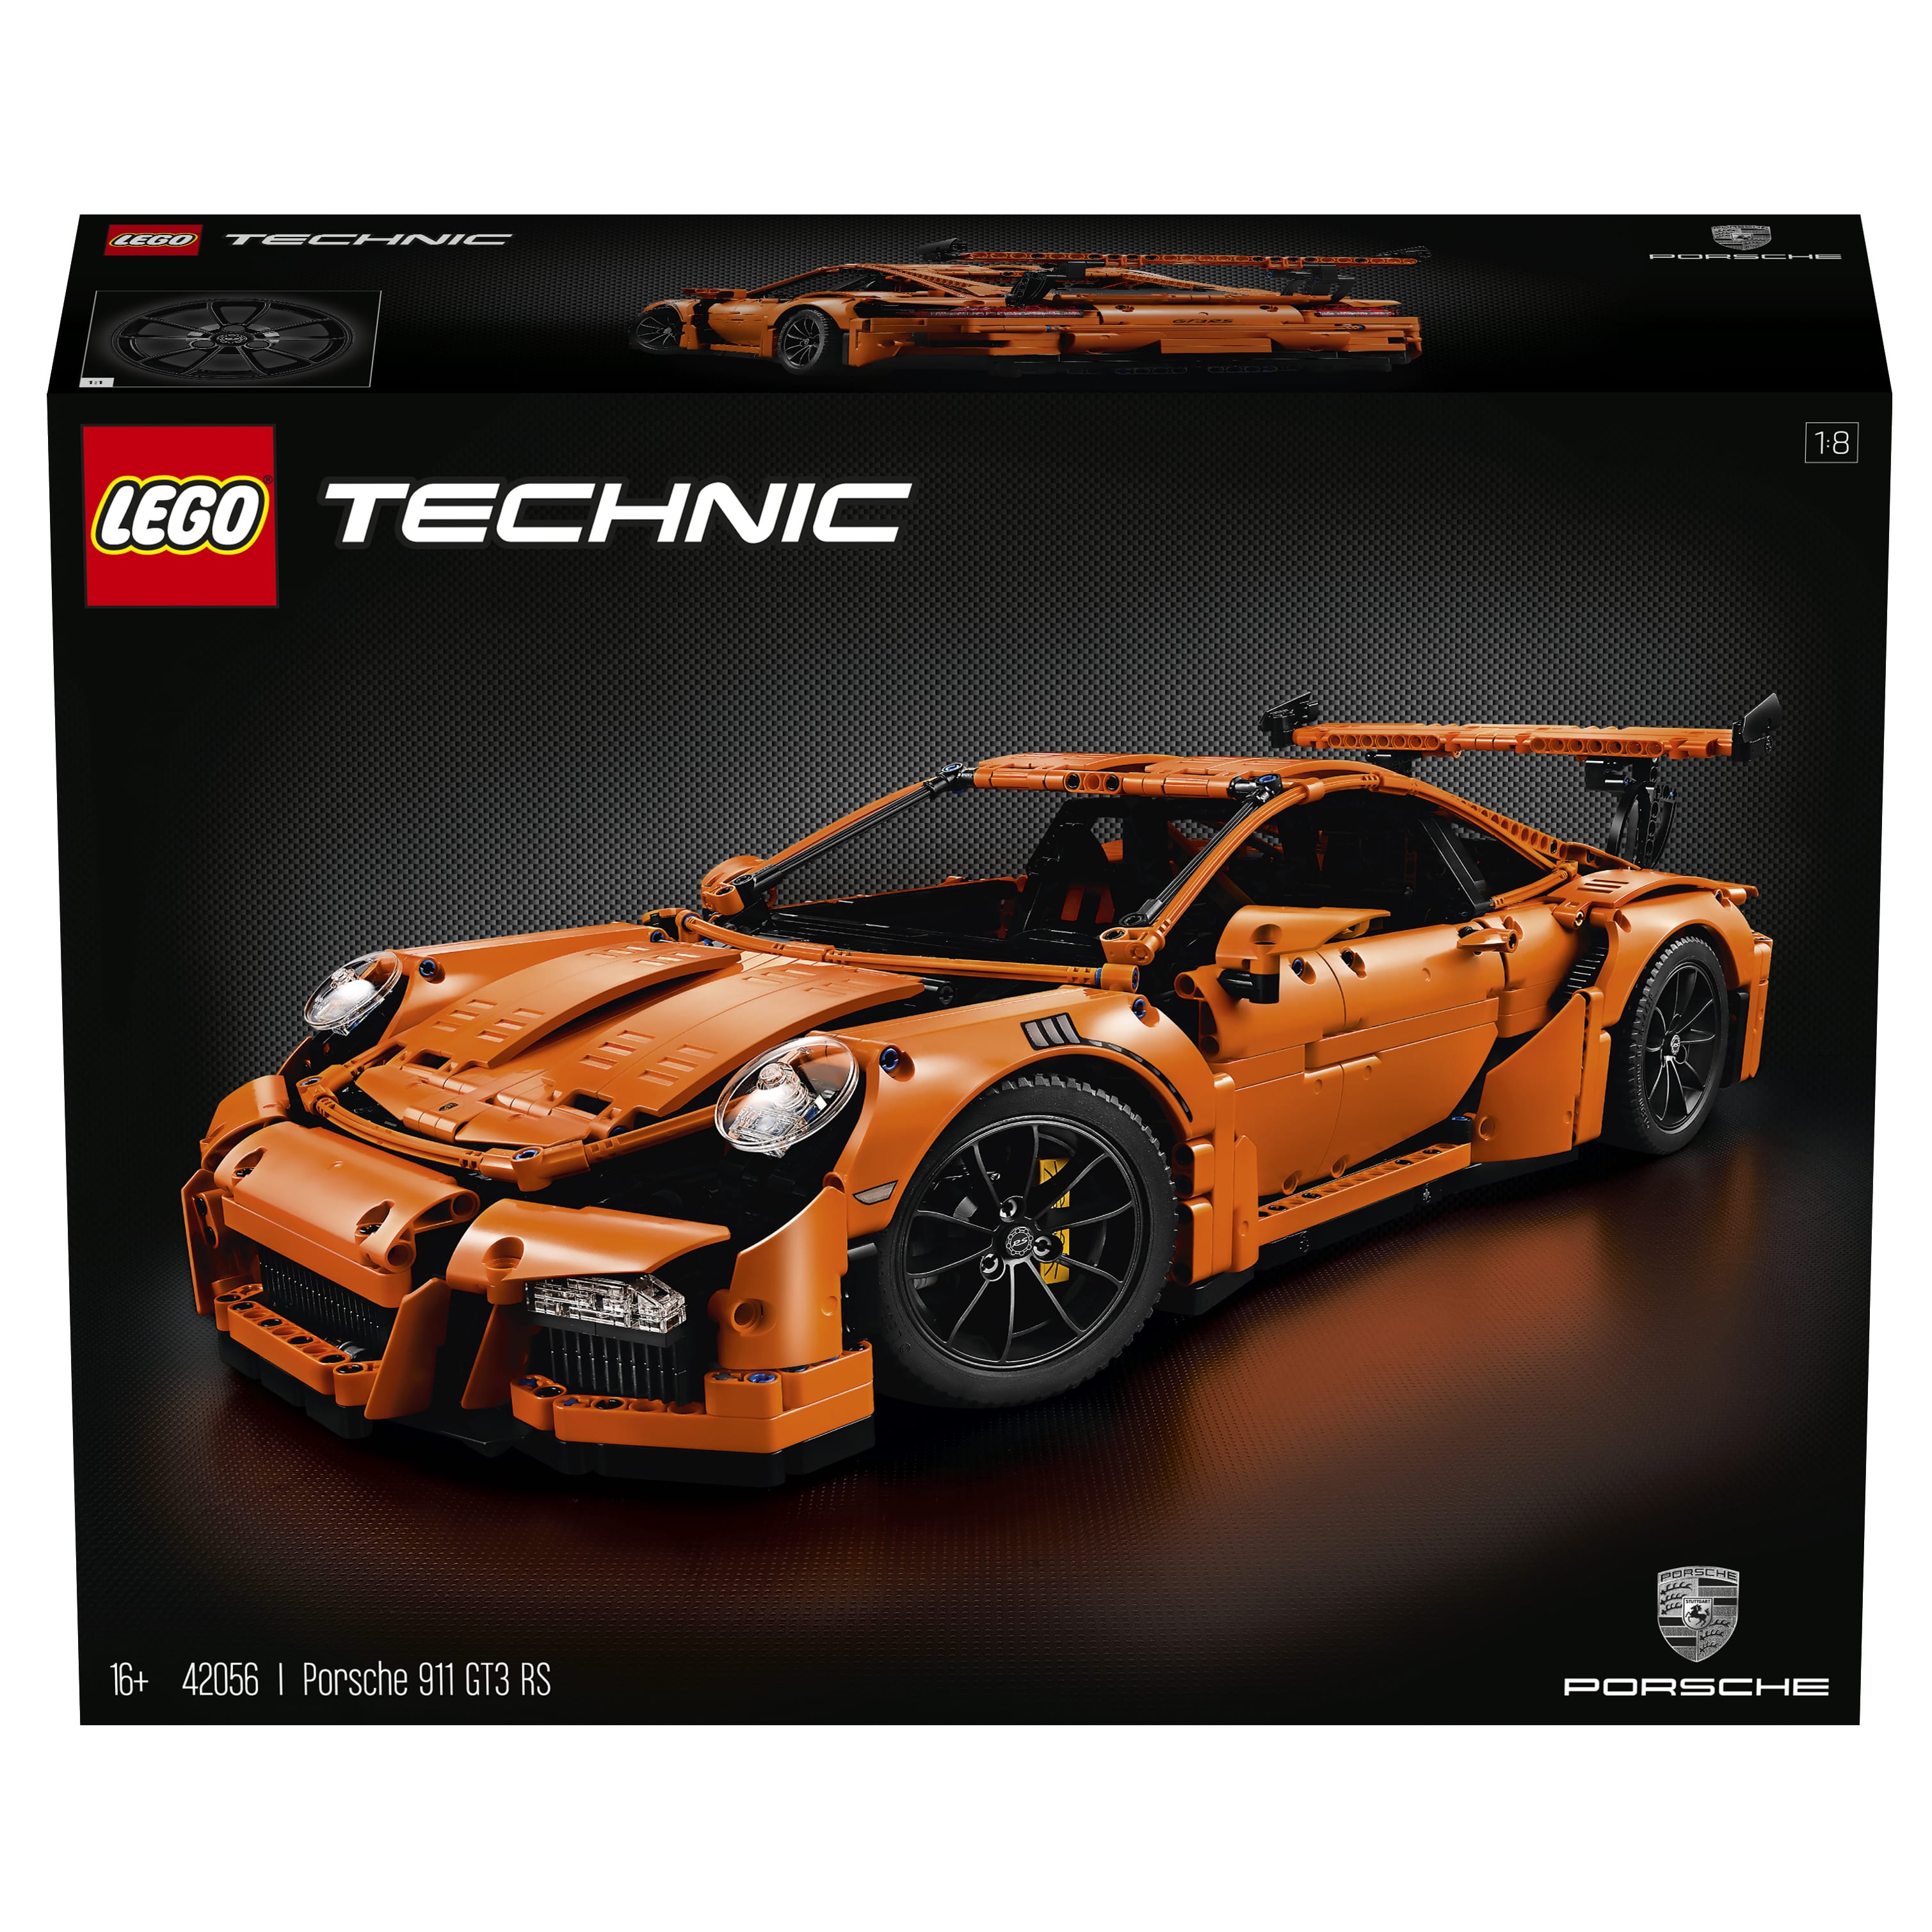 LEGO Technic Porsche 911 GT3 RS (42056) Officially